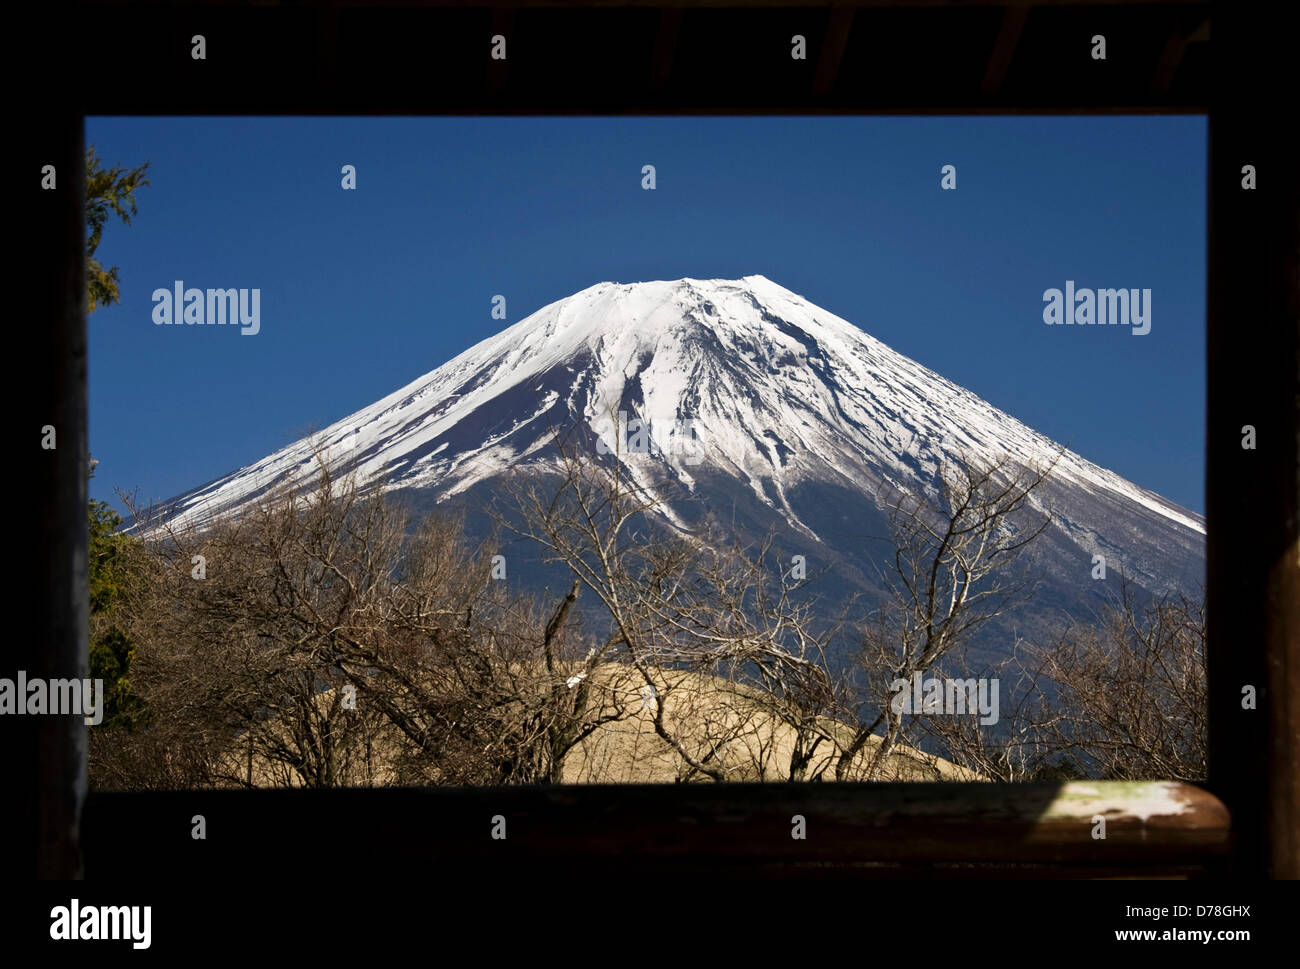 Filepics: il Monte Fuji, Giappone. Mt Fuji è incorniciato in apertura di legno di un ricovero in una passeggiata che prende il trekking attraverso le parti di ricambio dell'altopiano Asagiri nella Prefettura di Shizuoka Giappone il 22 marzo 2013. Secondo il governo giapponese Giappone iconici Mt. è stata consigliata per la registrazione come sito del Patrimonio mondiale da un advisory panel per l'UNESCO. Fotografo: Robert Gilhooly/Alamy Live News Foto Stock